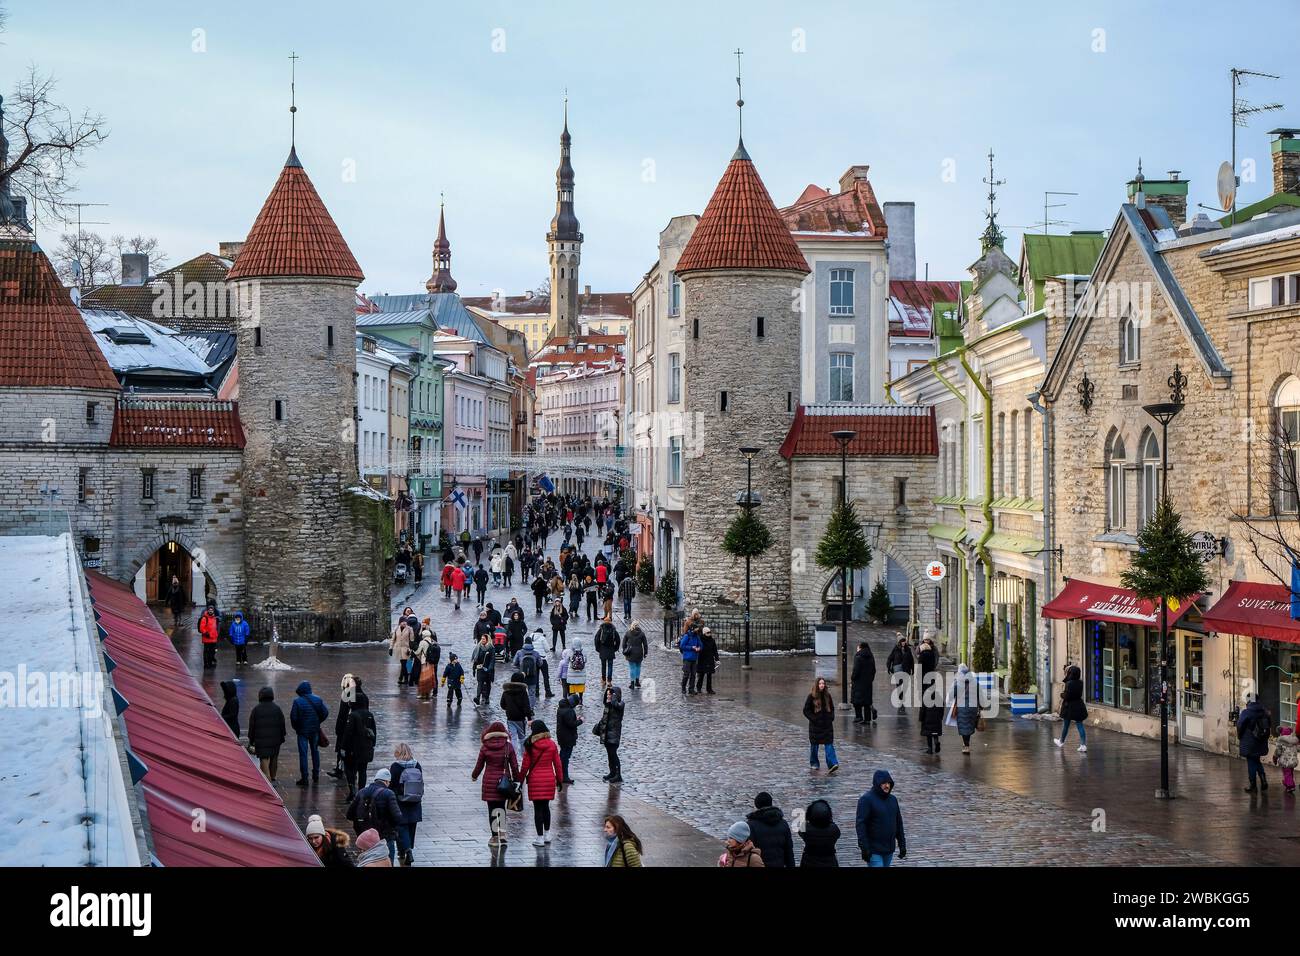 Tallinn, Estonie - Vieille ville de Tallinn, porte d'argile, tours de guet de la ville médiévale porte Viru, le Viru est la principale rue commerçante de la ville, derrière la tour de la mairie sur la place de la mairie. Banque D'Images